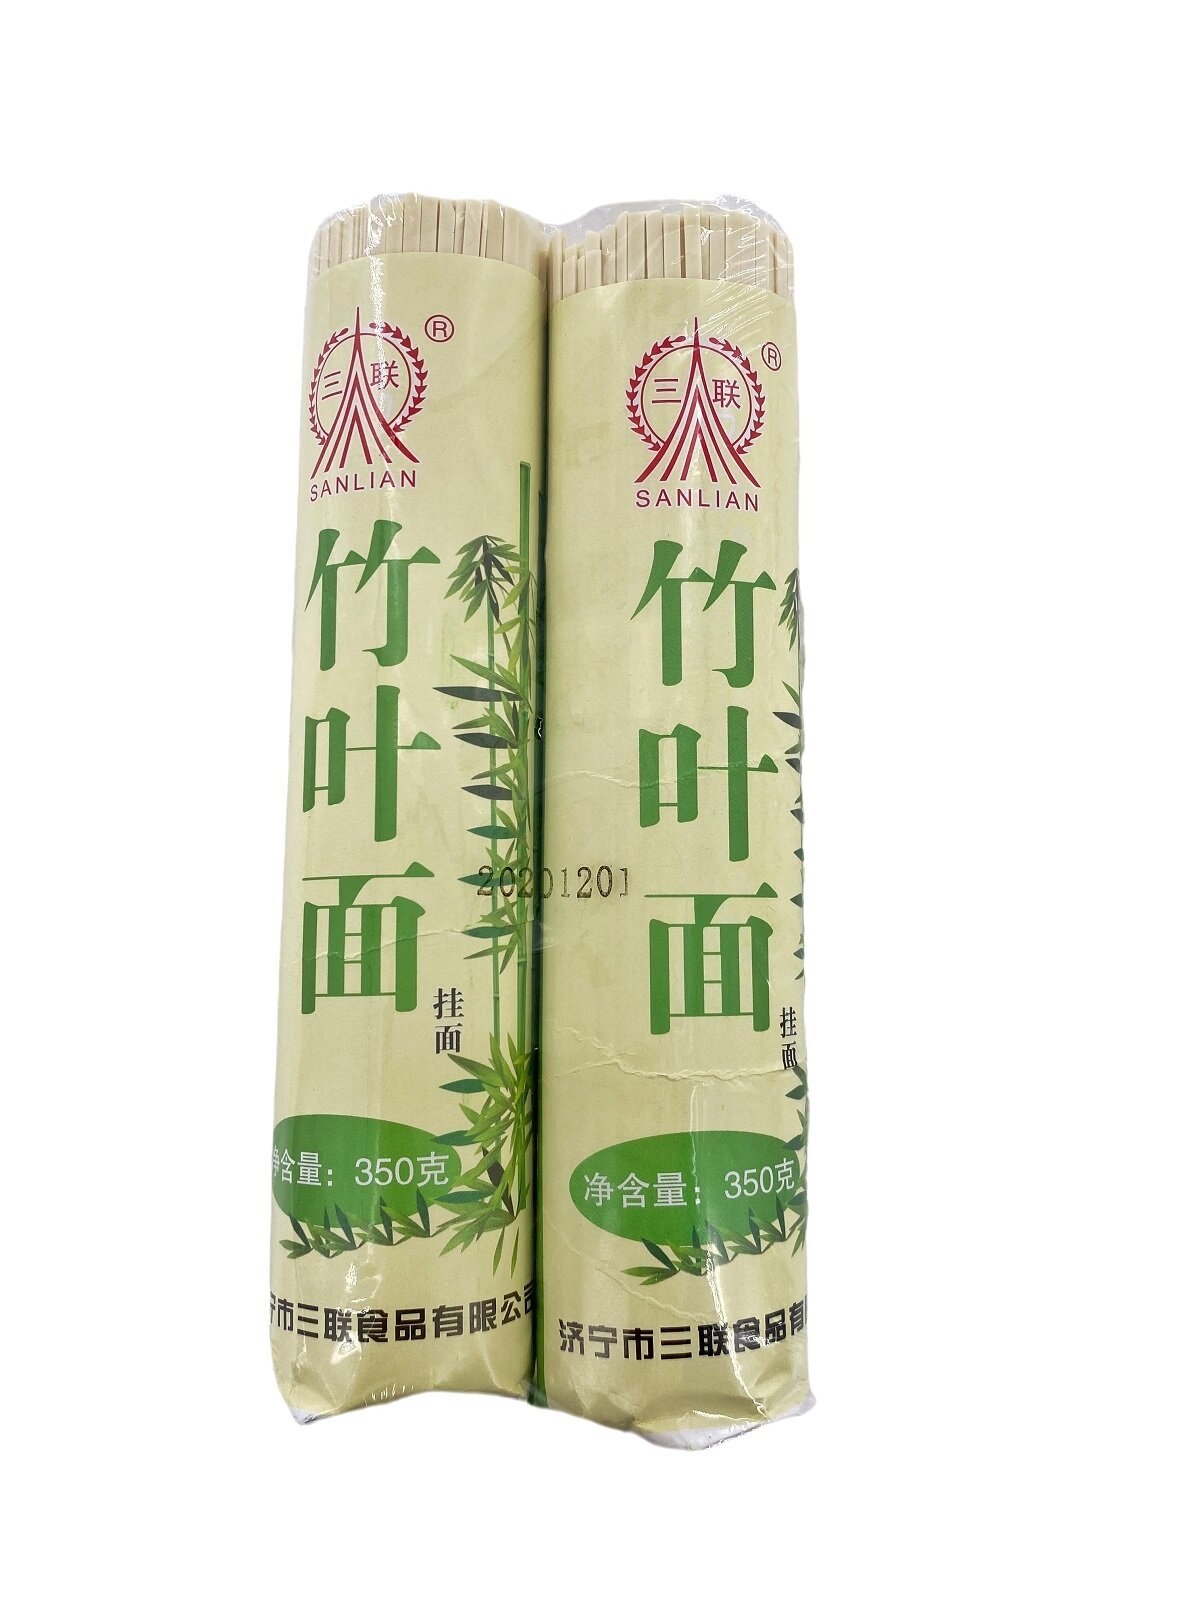 Китайская лапша , набор из 2 упаковок по 350 грамм